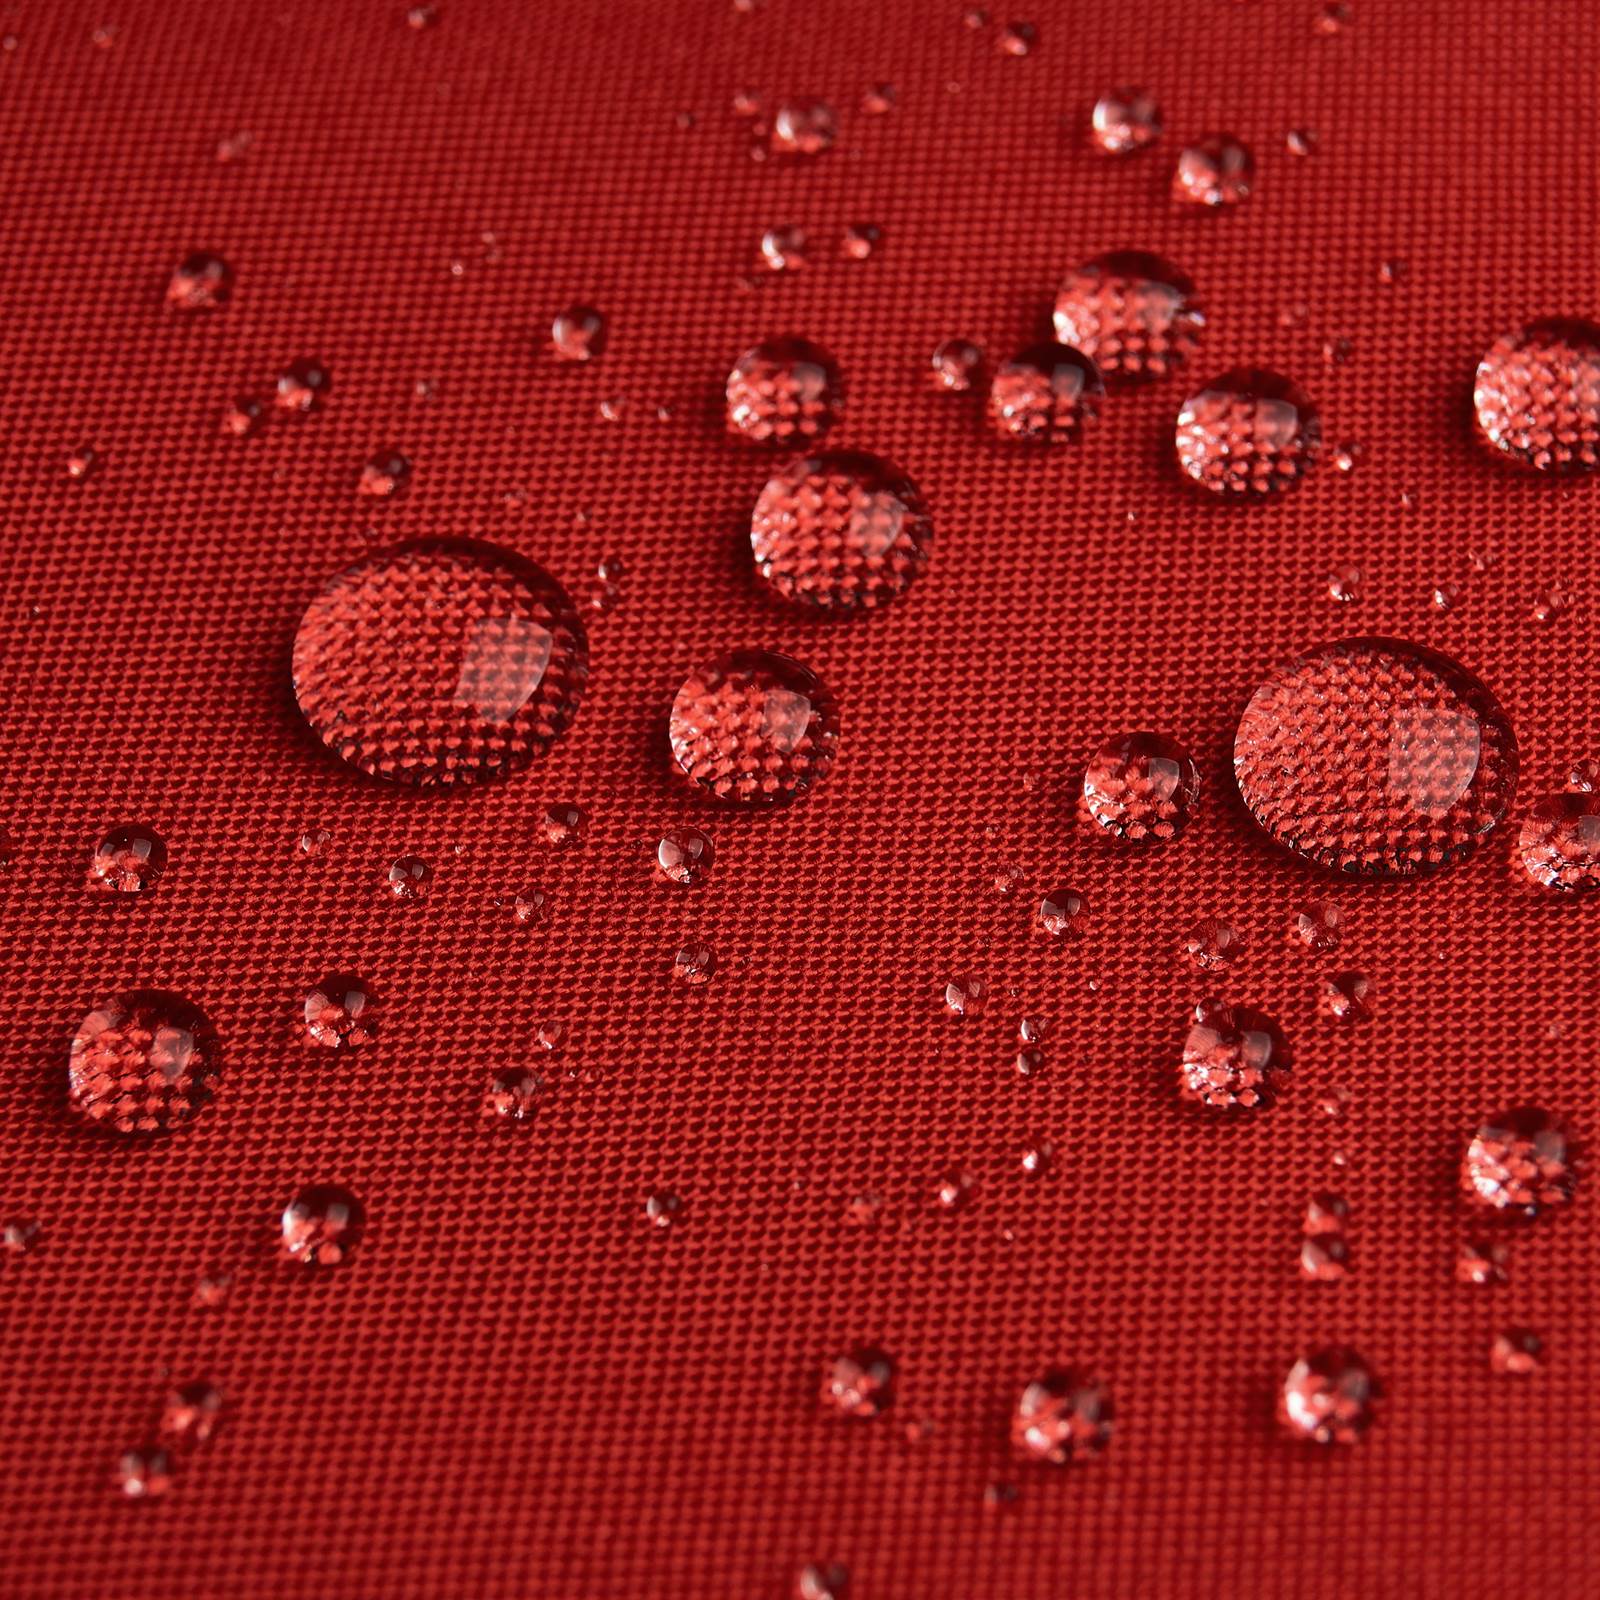 Stratos - Cordura® Laminado de 3 camadas (vermelho)